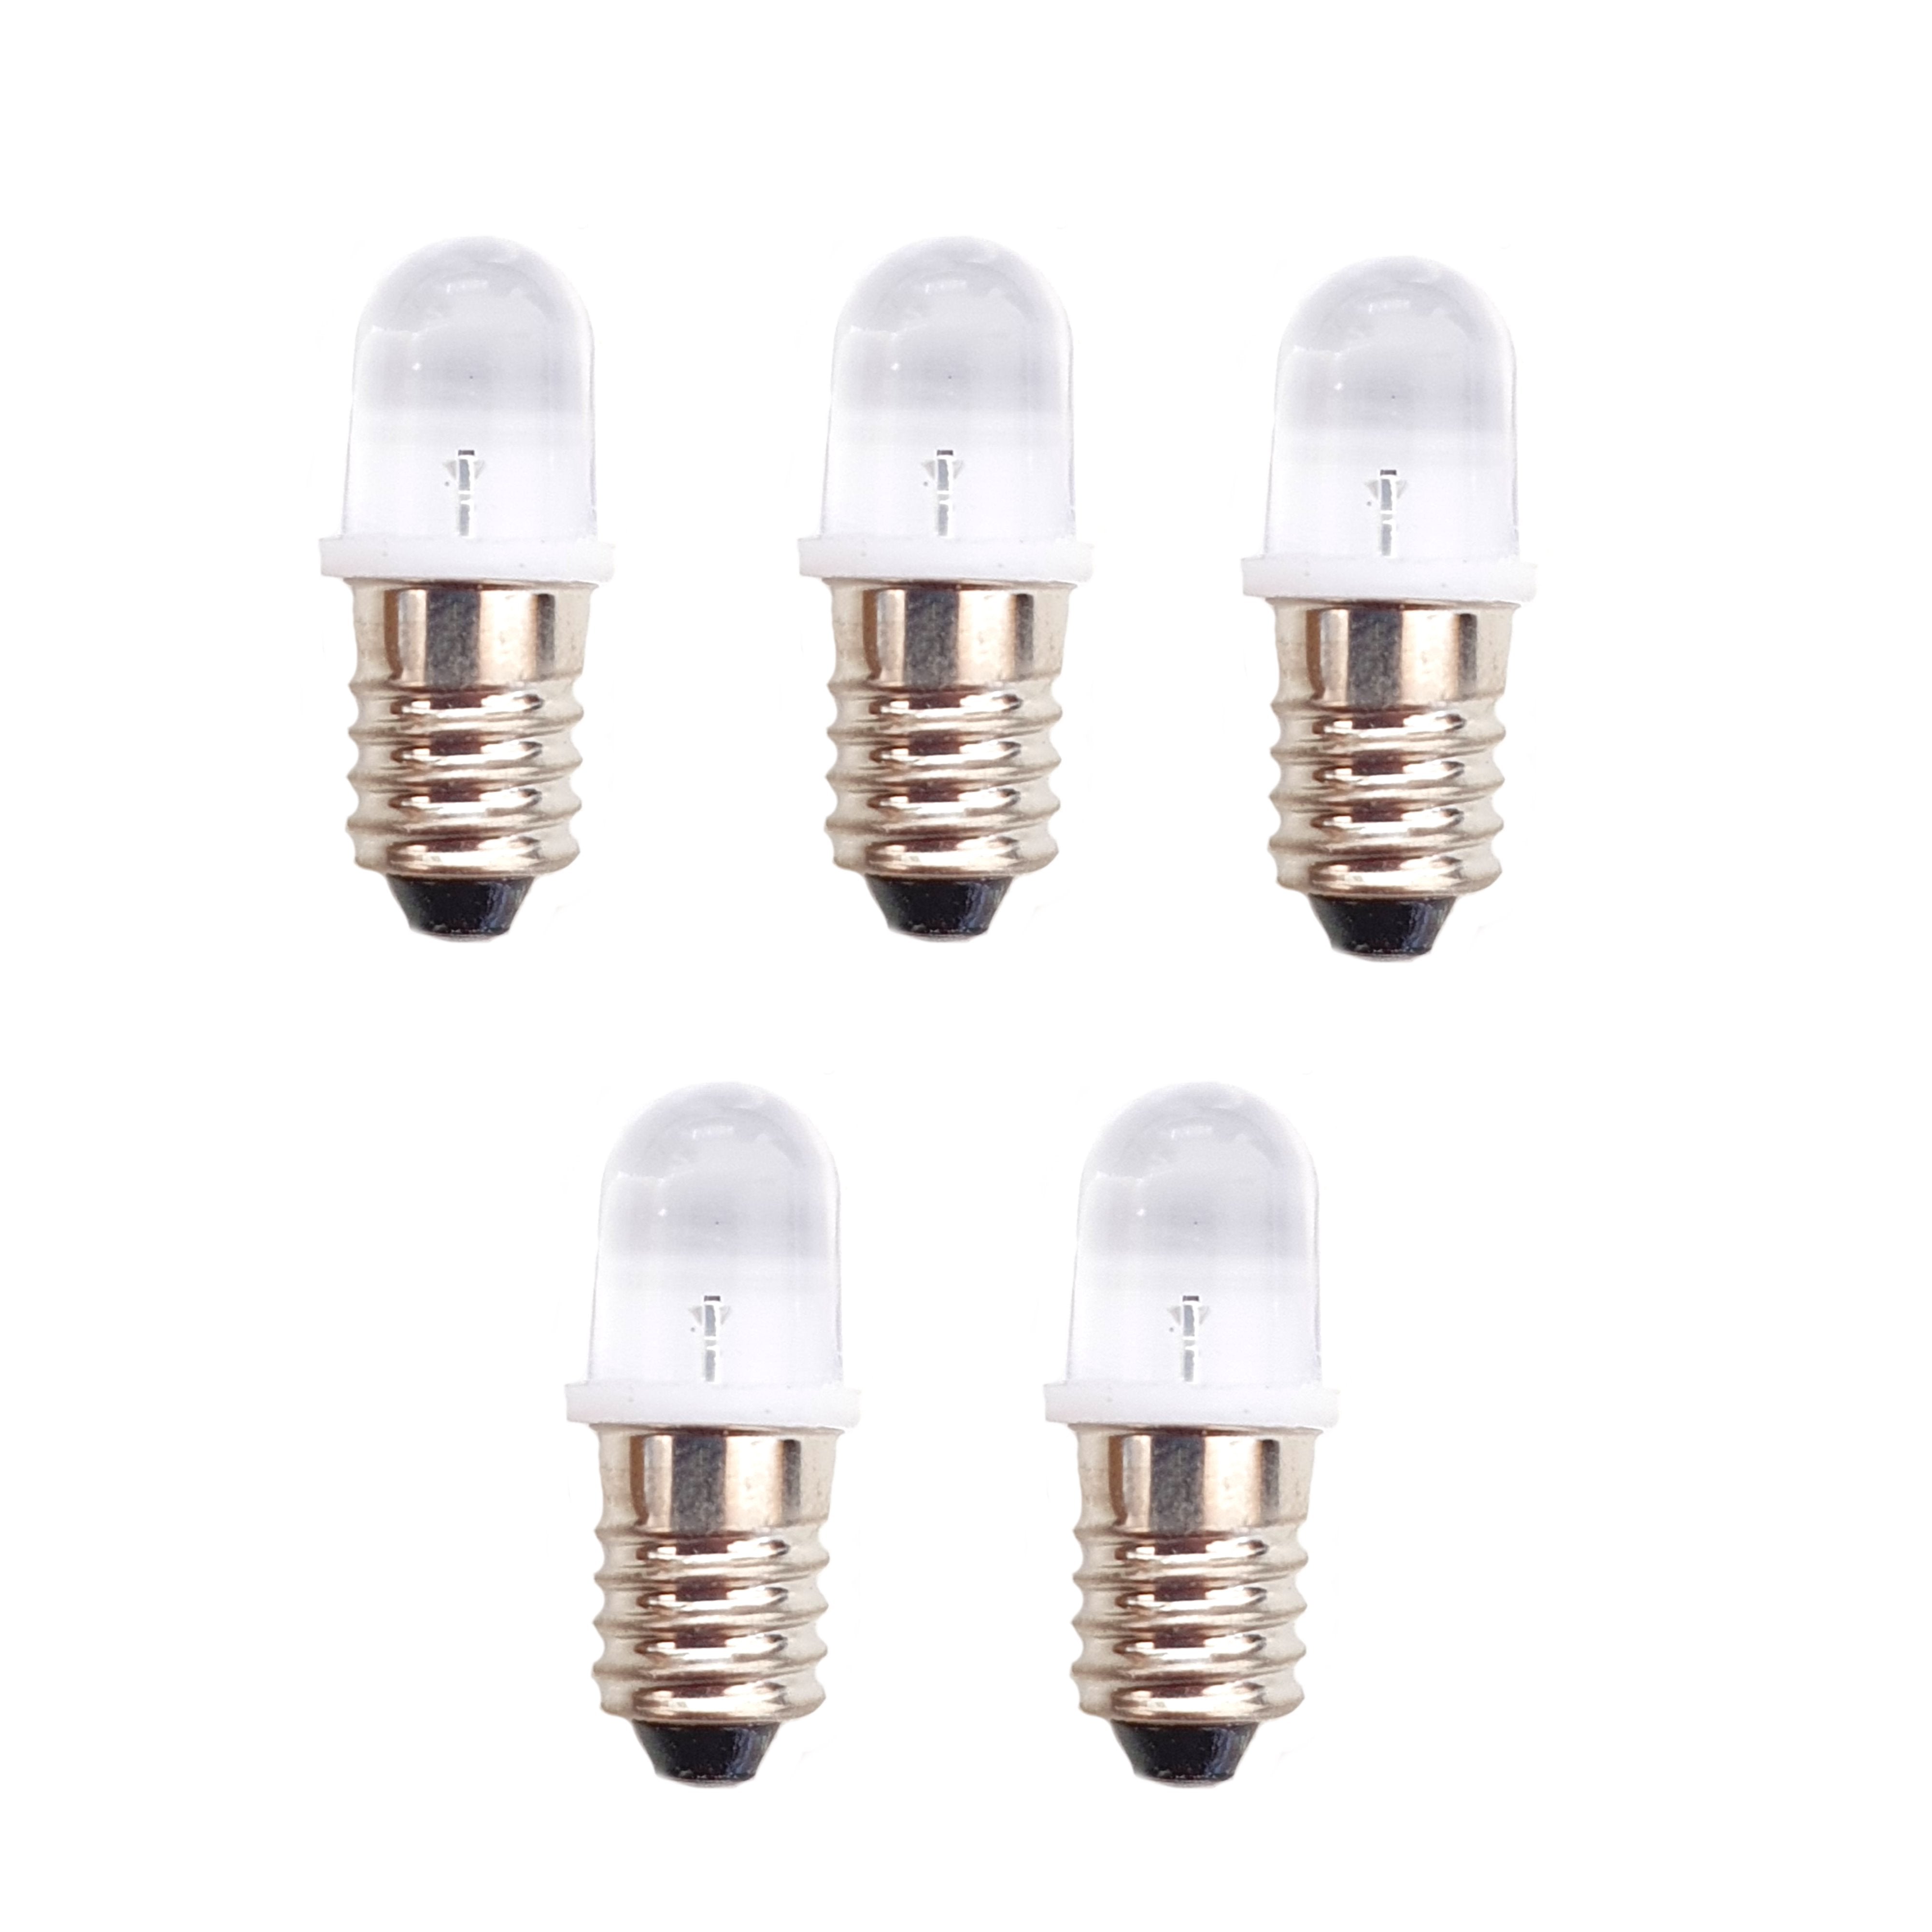 5 x 12V MES E10 LED Lamp Bulb 10mm Diameter - White